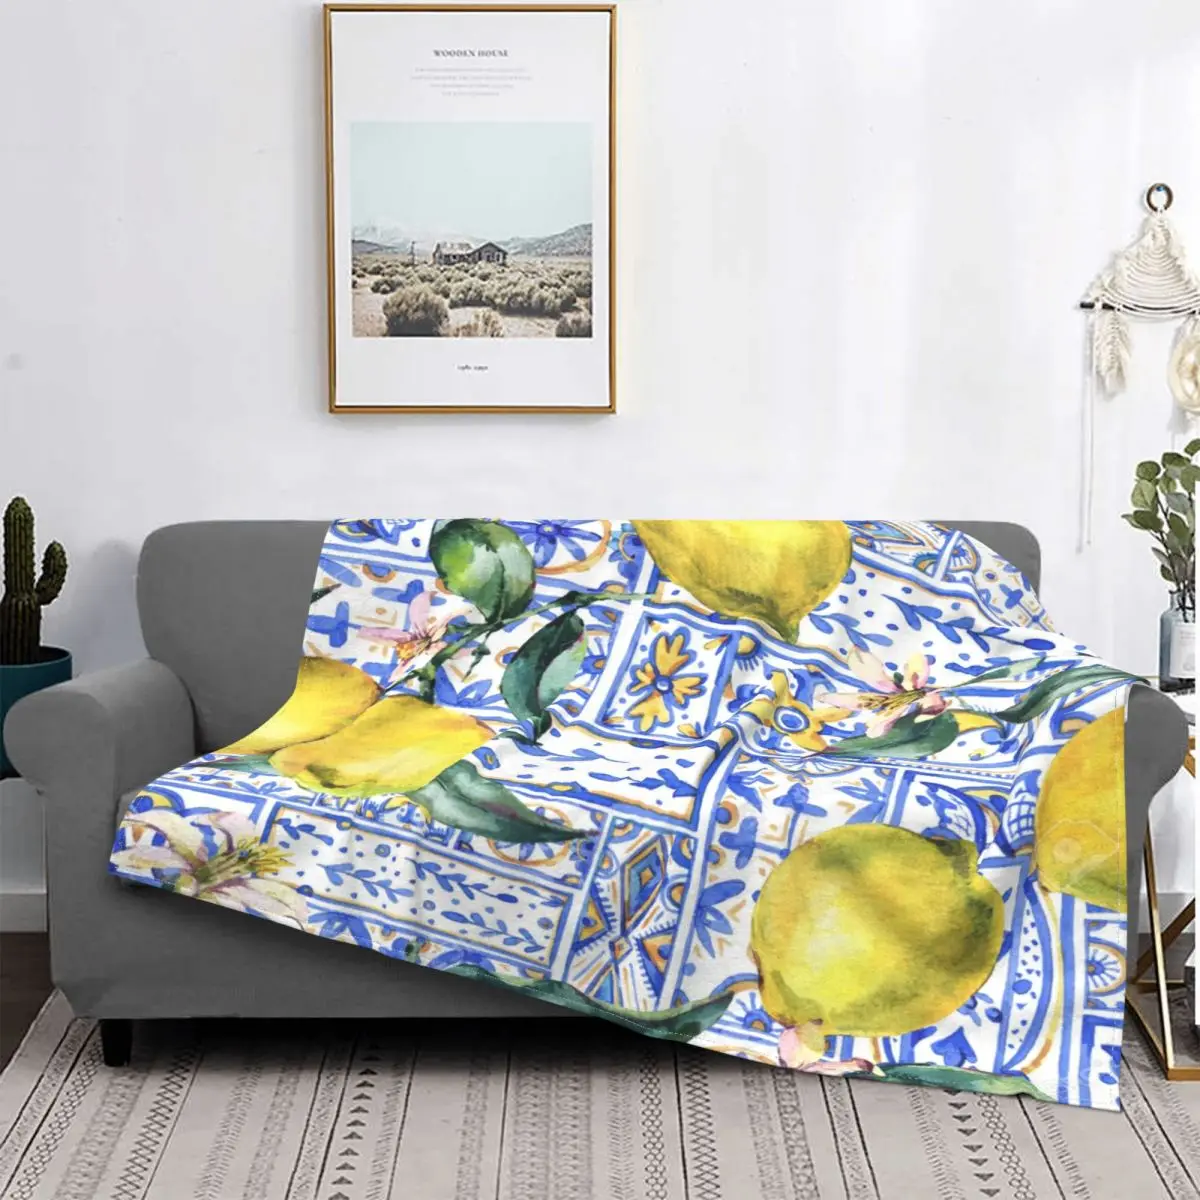 

Средиземноморское одеяло с лимоном 1234, покрывало для кровати, плед, покрывало для кровати, художественные покрывала для диванов